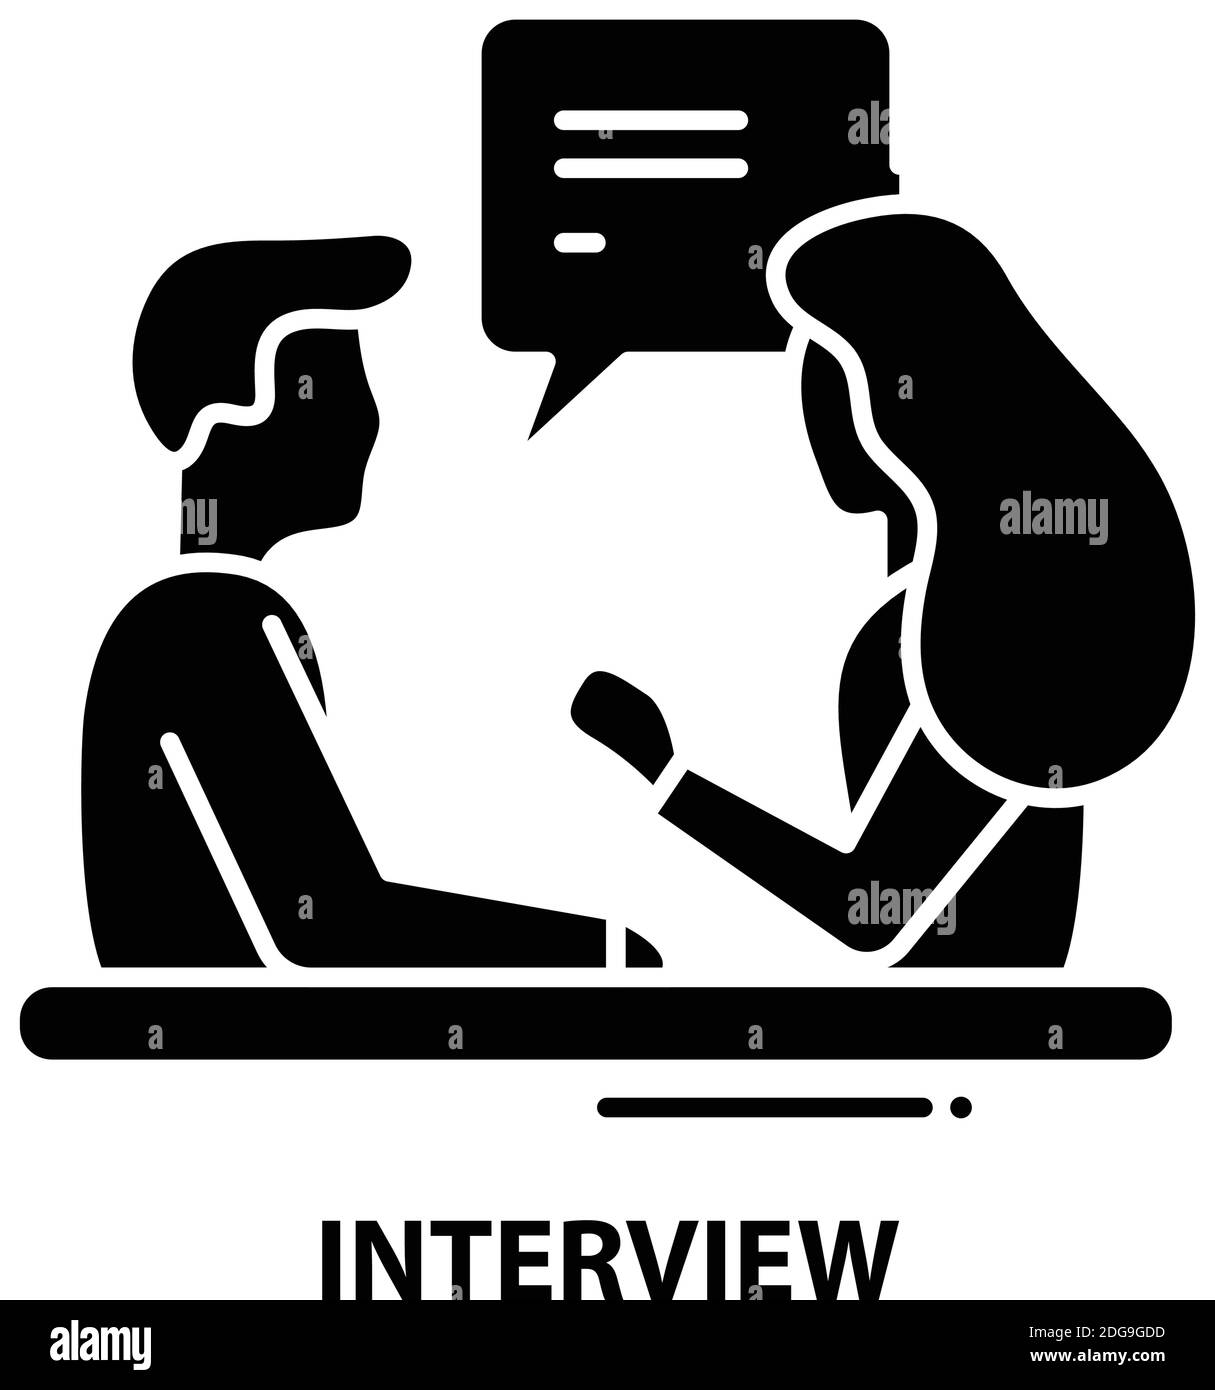 icona intervista, segno vettoriale nero con tratti modificabili, illustrazione del concetto Illustrazione Vettoriale